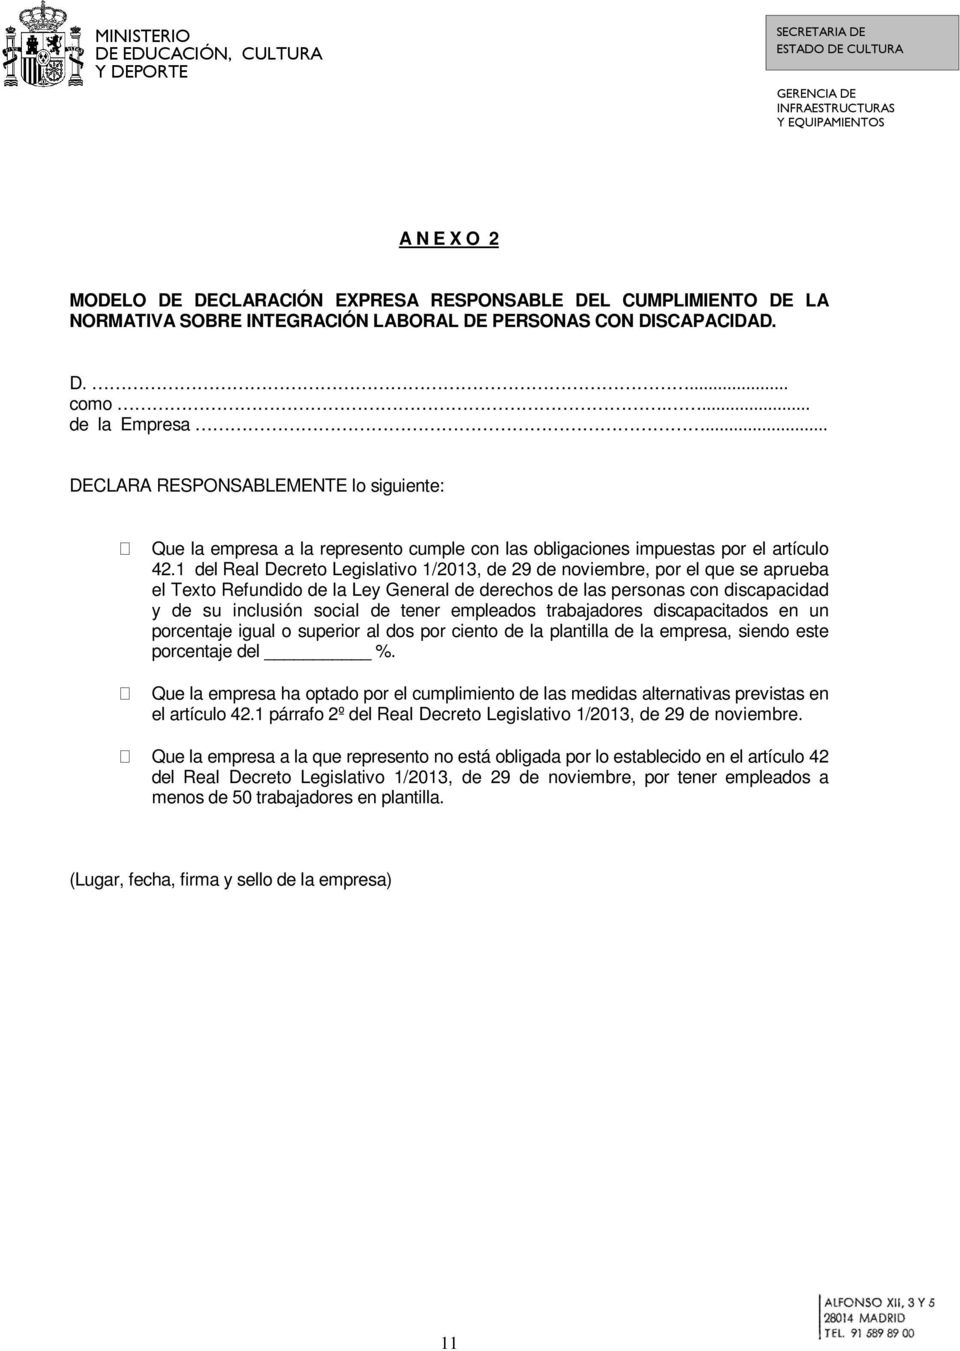 1 del Real Decreto Legislativo 1/2013, de 29 de noviembre, por el que se aprueba el Texto Refundido de la Ley General de derechos de las personas con discapacidad y de su inclusión social de tener